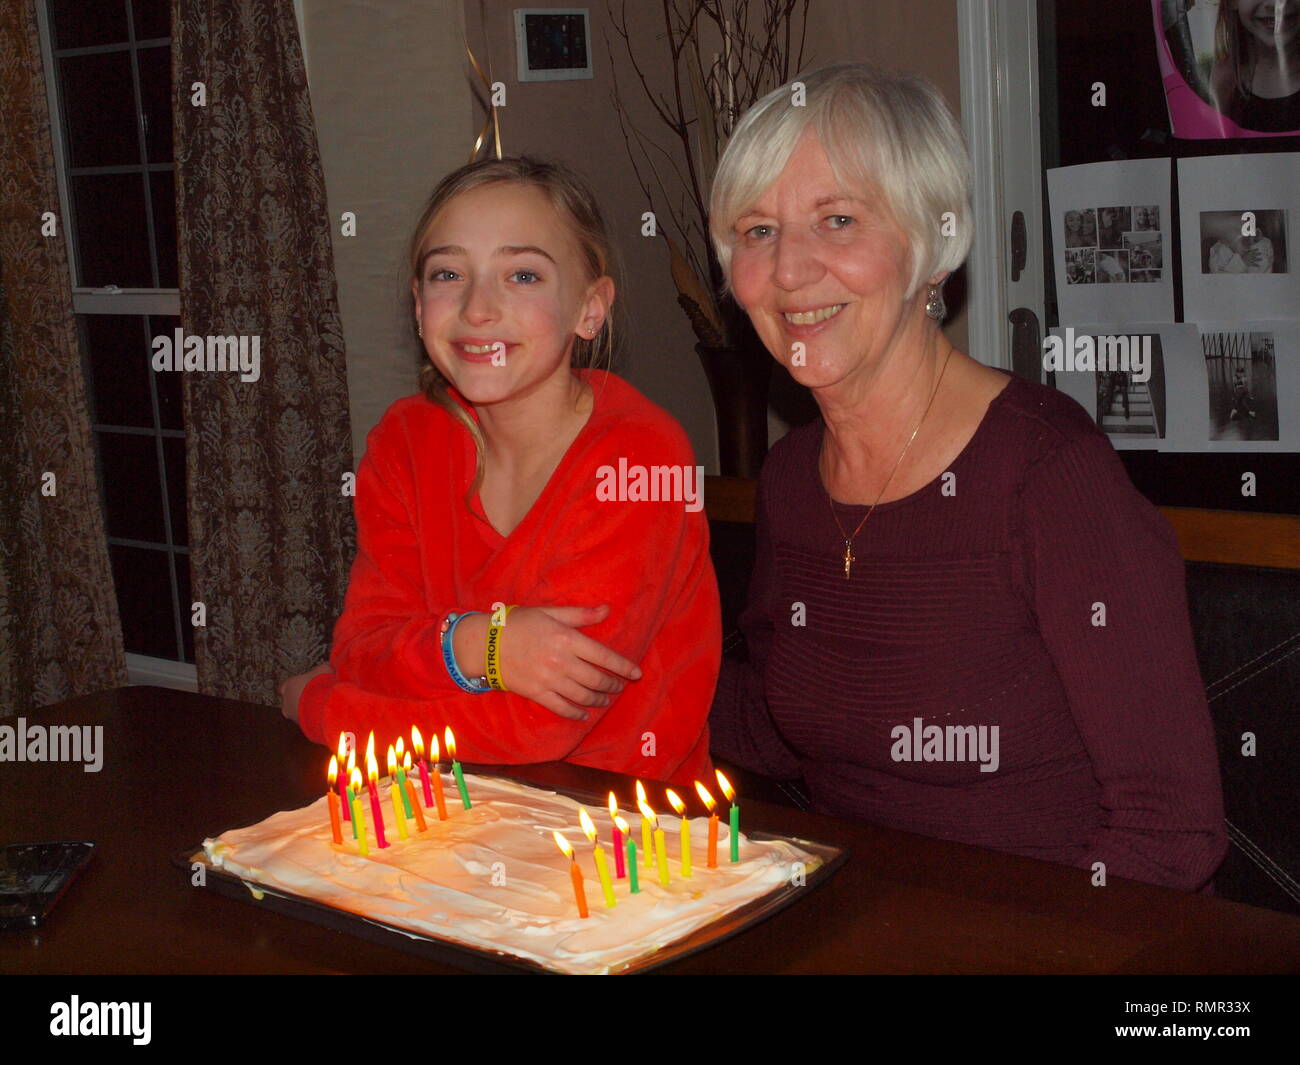 Grand Tochter Nana co-feiern am gleichen Tag Geburtstag. 60 Jahre auseinander geboren, sie feiern mit einer Geburtstagstorte und Kerzen. Stockfoto